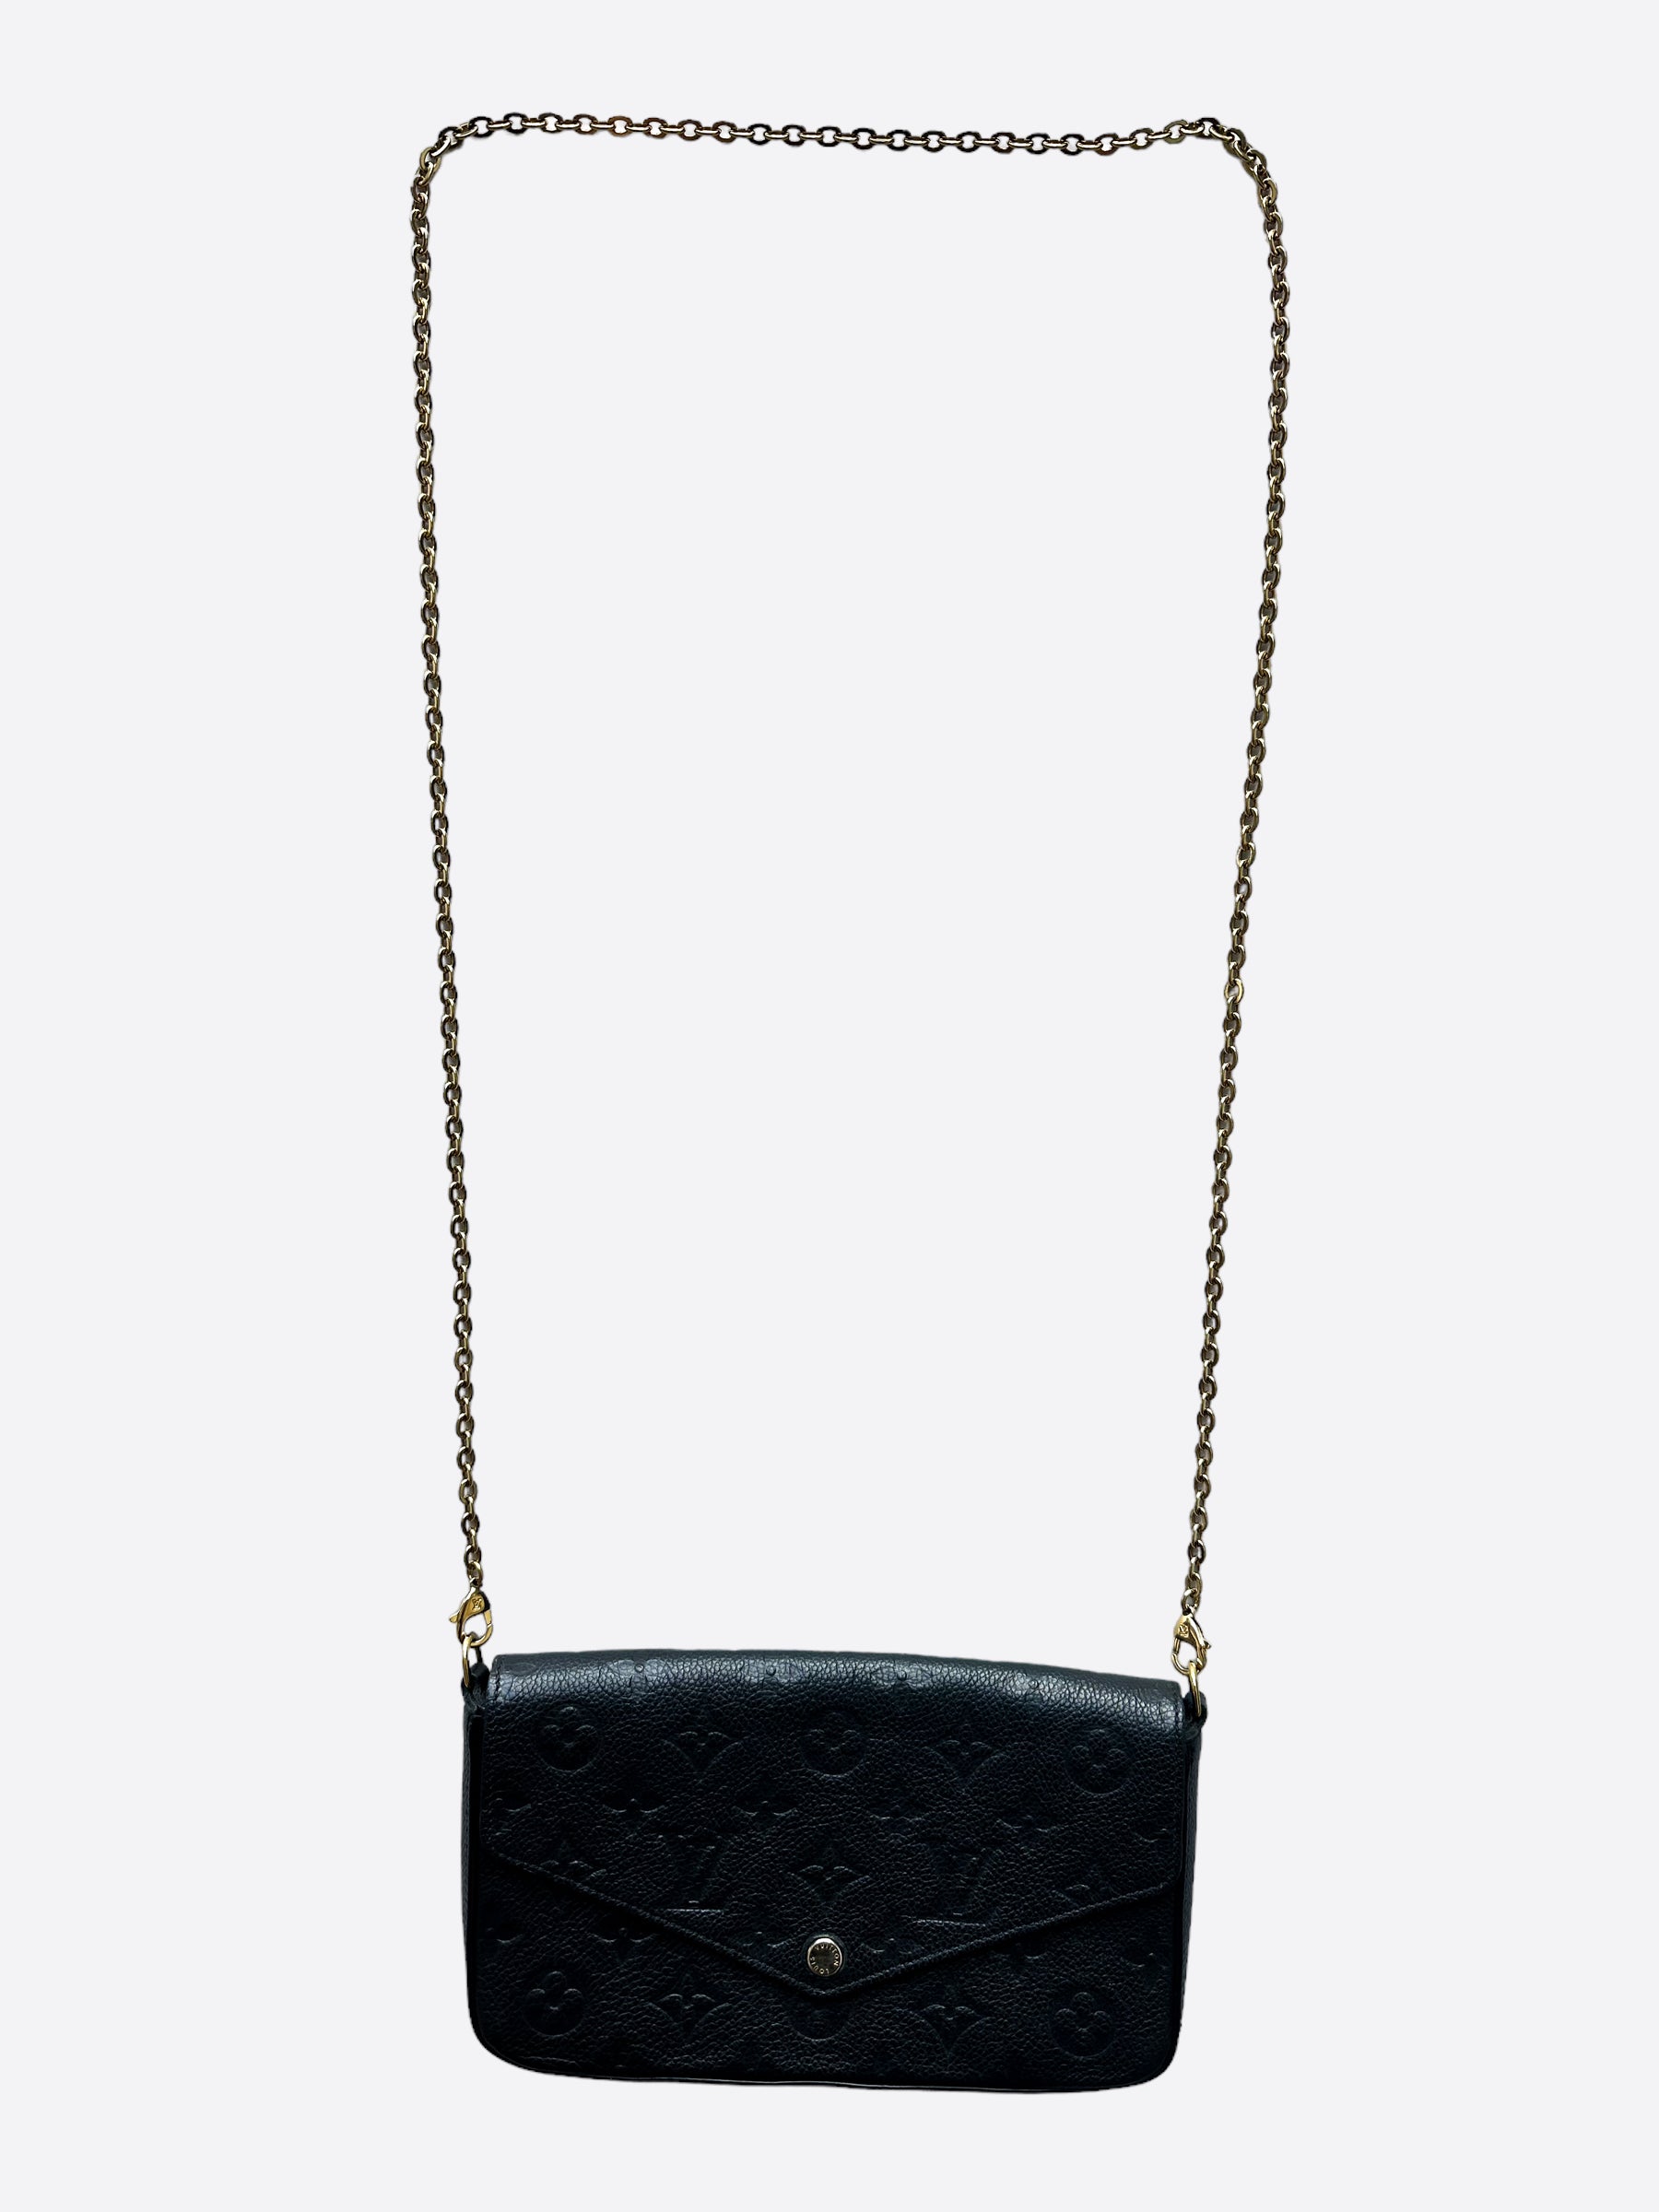 Louis Vuitton Empreinte Pochette Felicie Chain Wallet Black